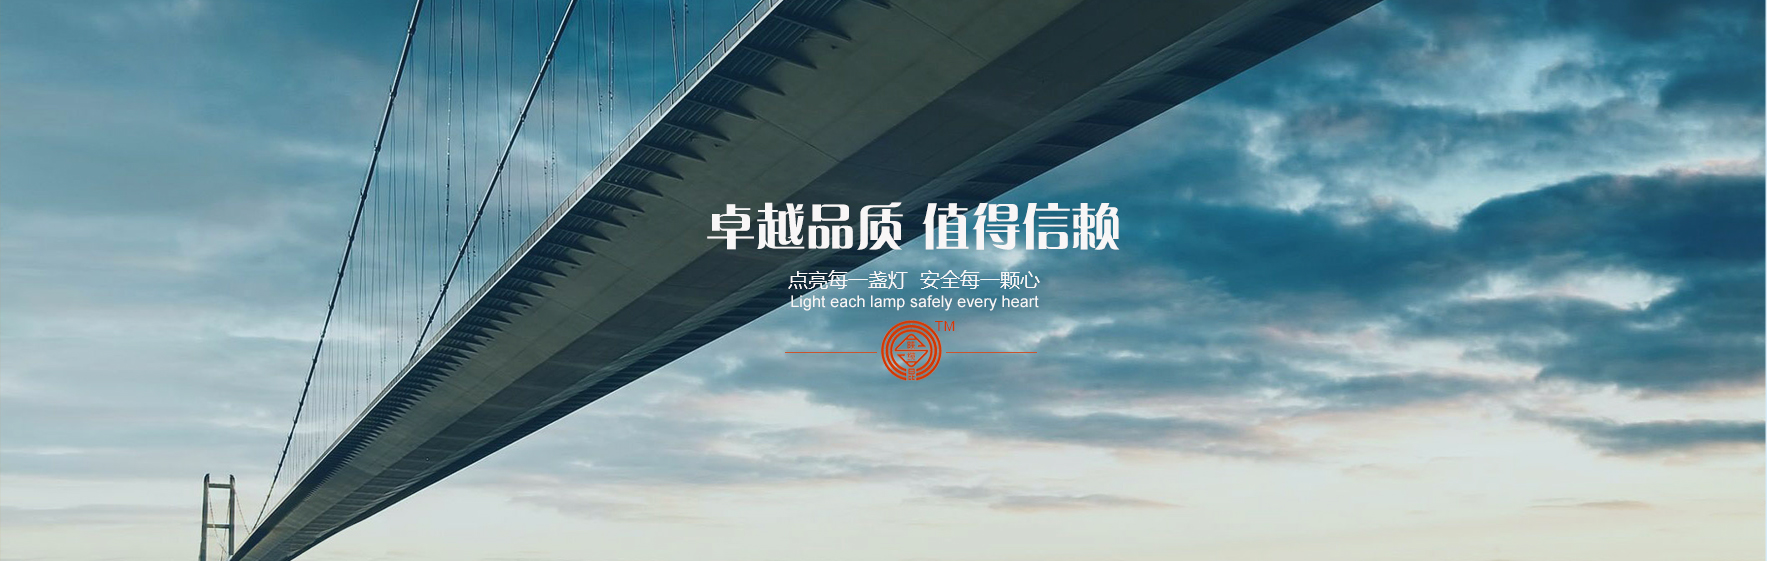 凯发网站·(china)集团 | 科技改变生活_项目9191